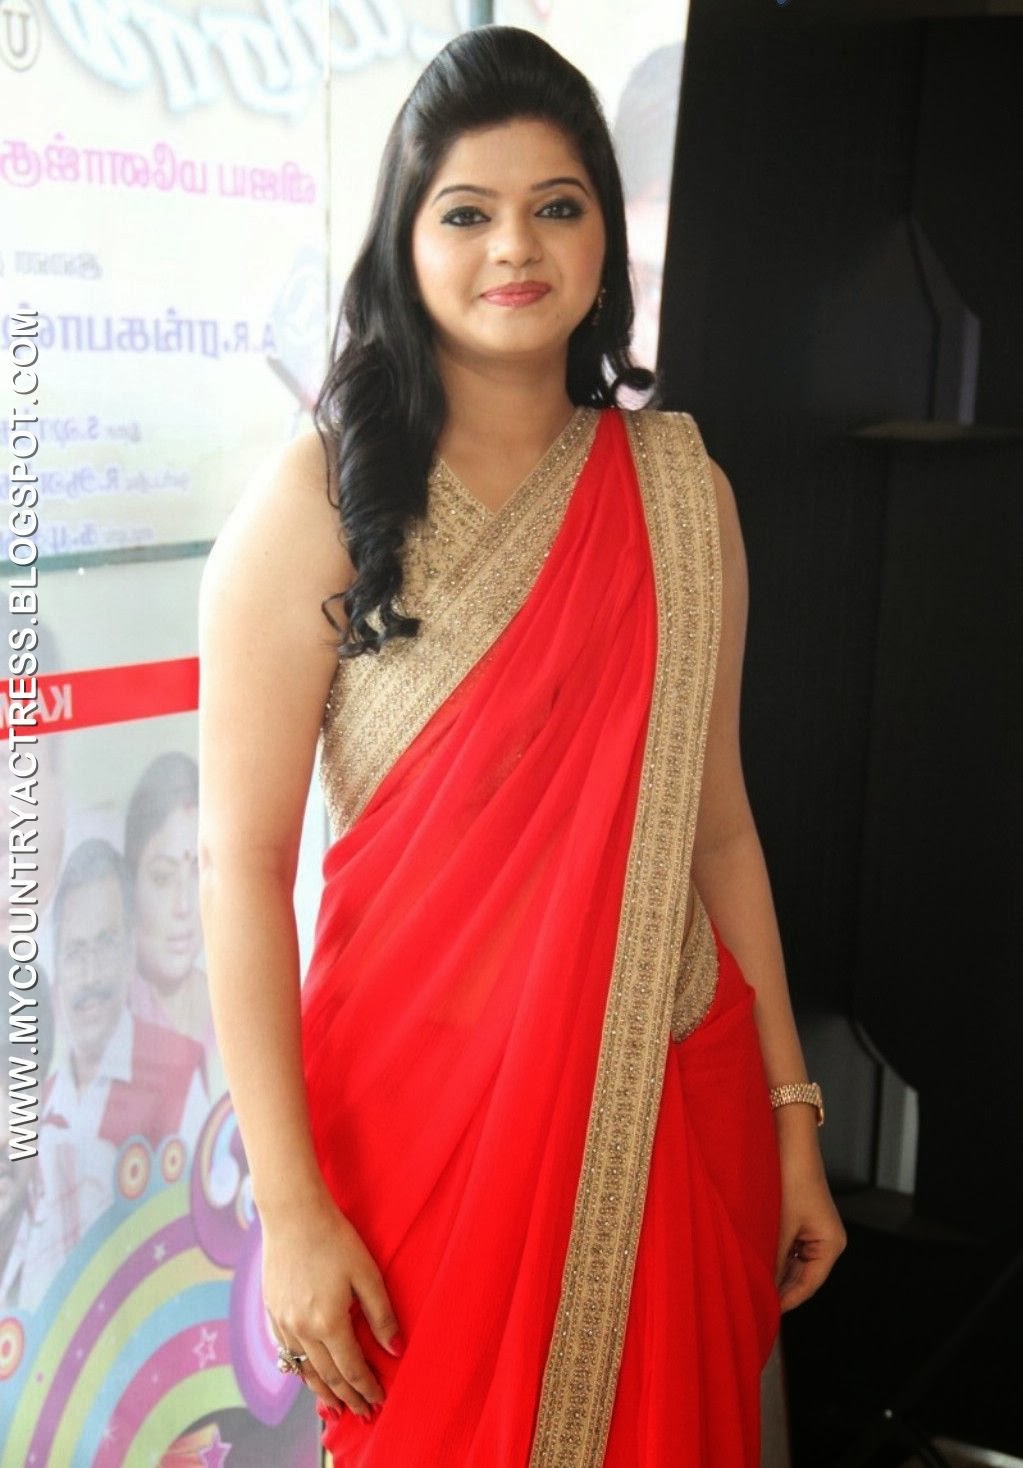 My Country Actress Tamil Actress Preethi Das Hot In Saree Photos